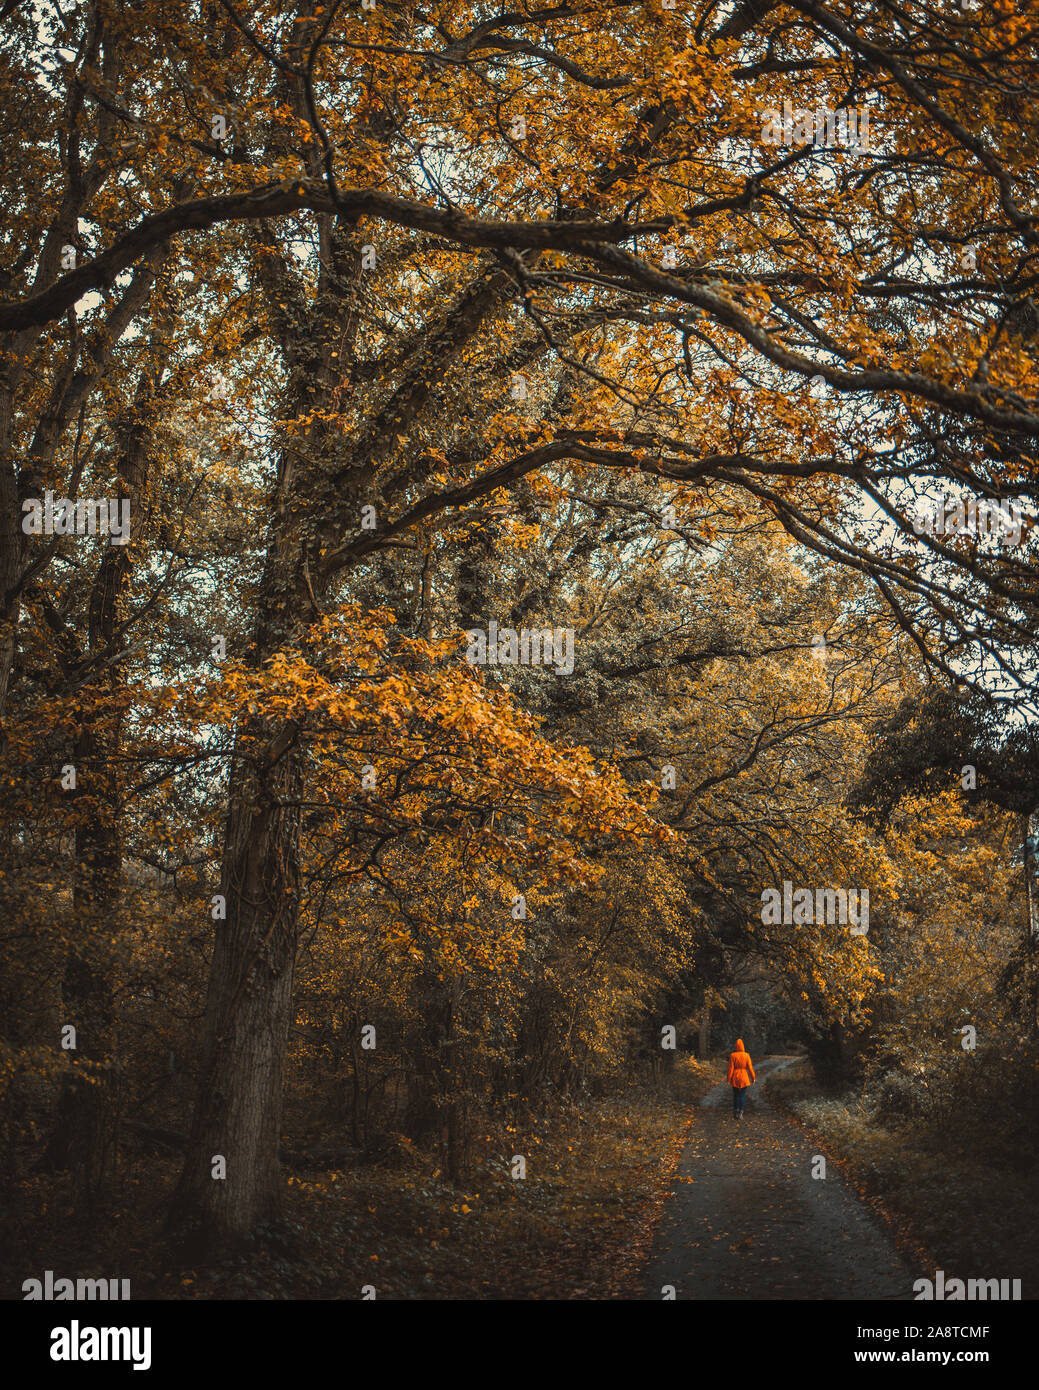 Une personne dans un imperméable marche dans une voie sombre dans les bois du comté de Berkshire en Angleterre durant la saison d'automne Banque D'Images